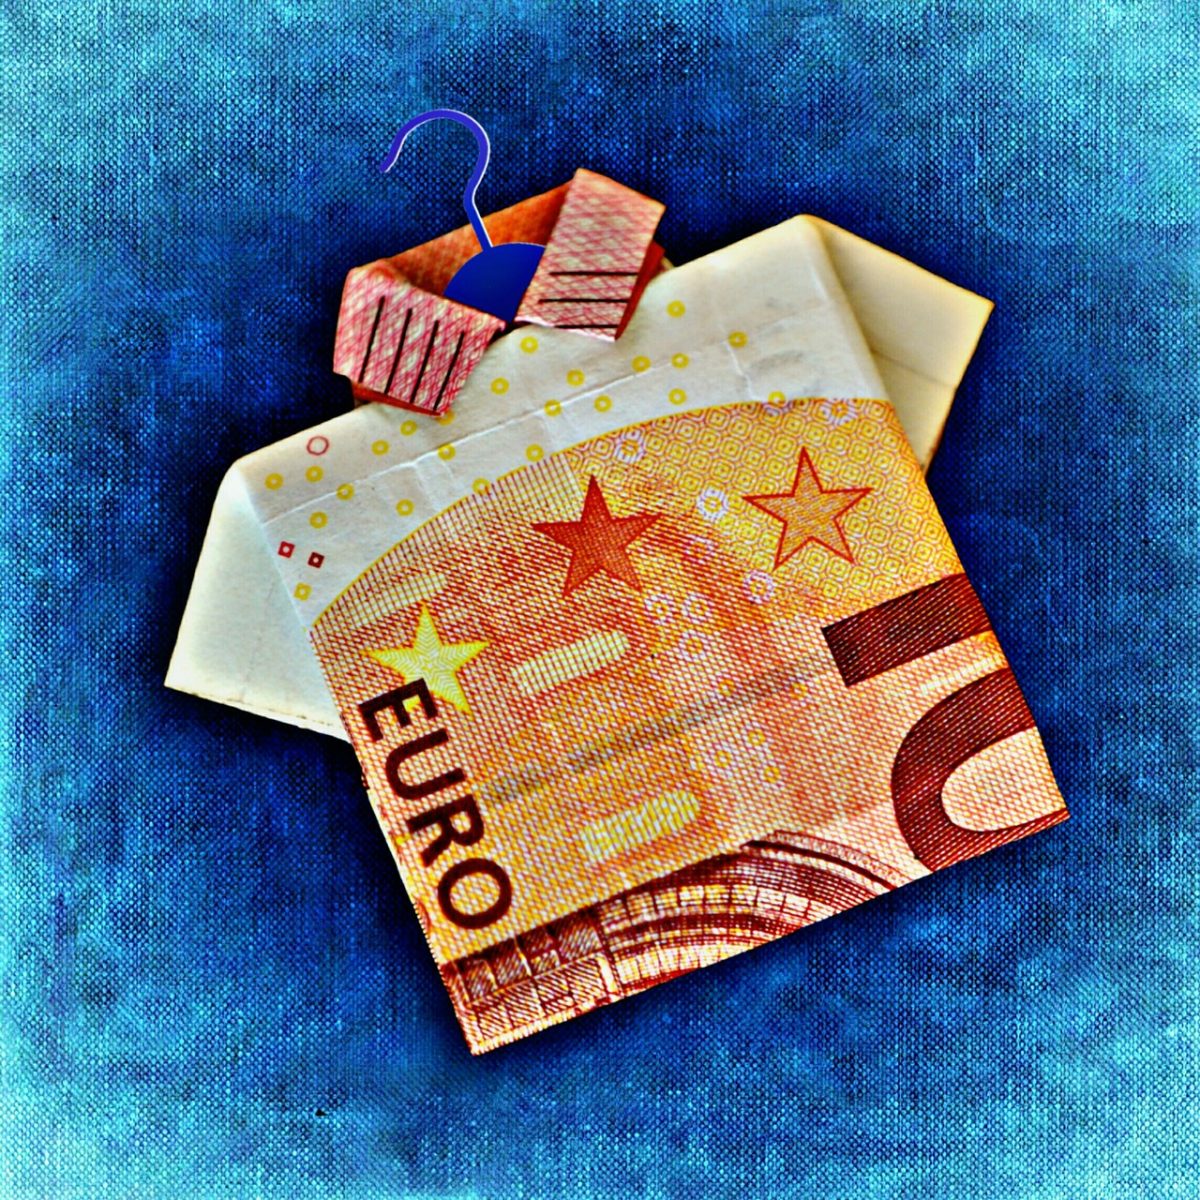 Bonus Covid-19 da 1000 euro: domande all’Inps per l’indennità entro il prossimo 15 dicembre 2020, pagamento entro fine mese